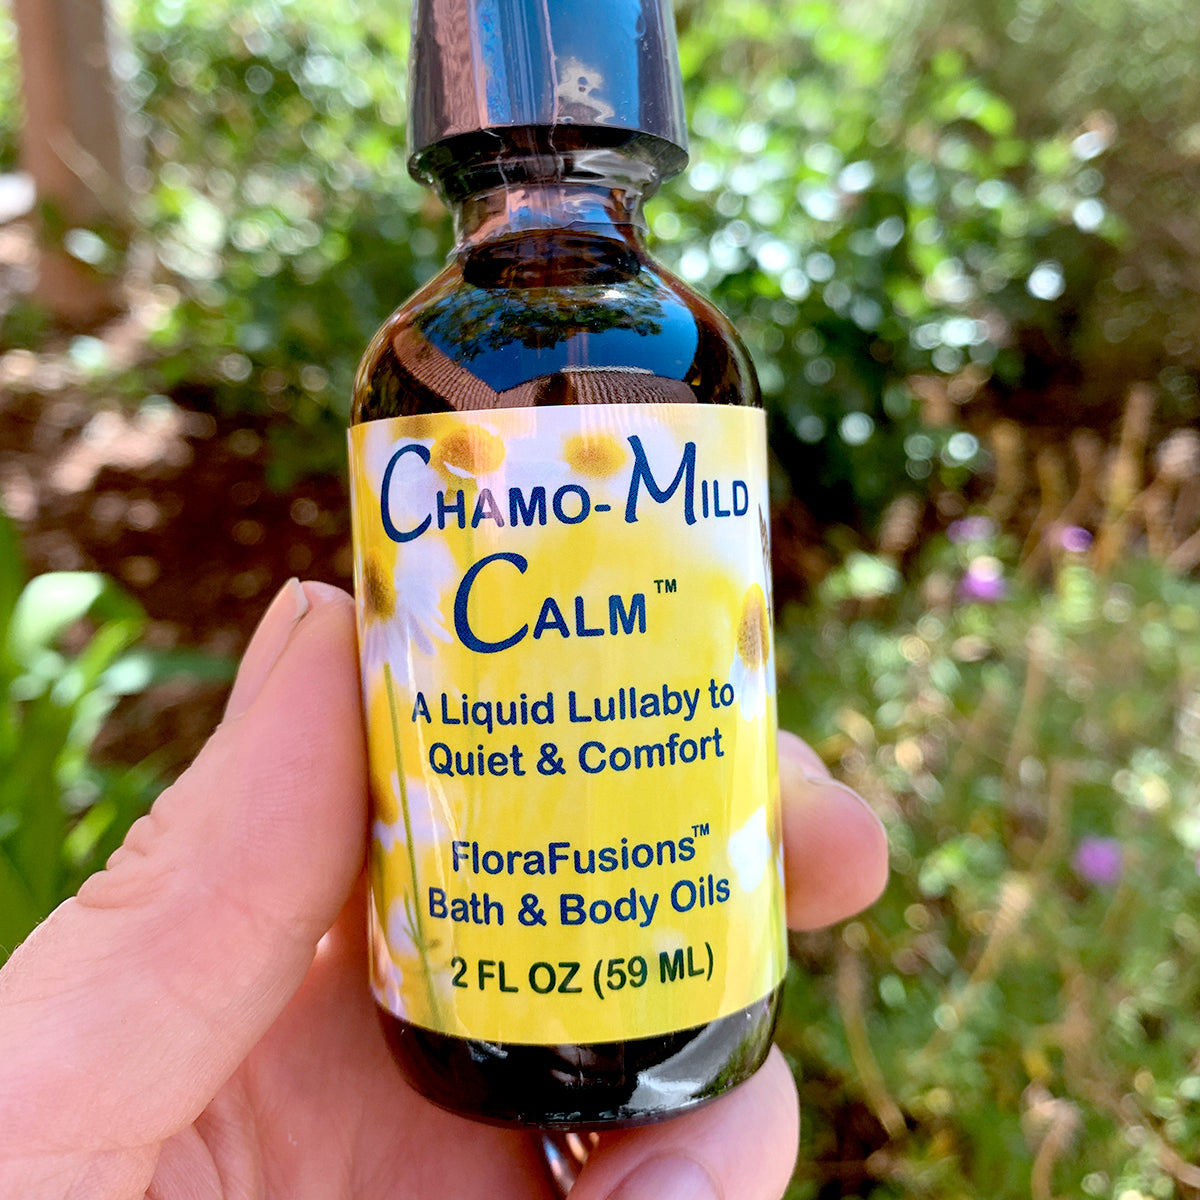 Chamo-Mild Calm Body Oil